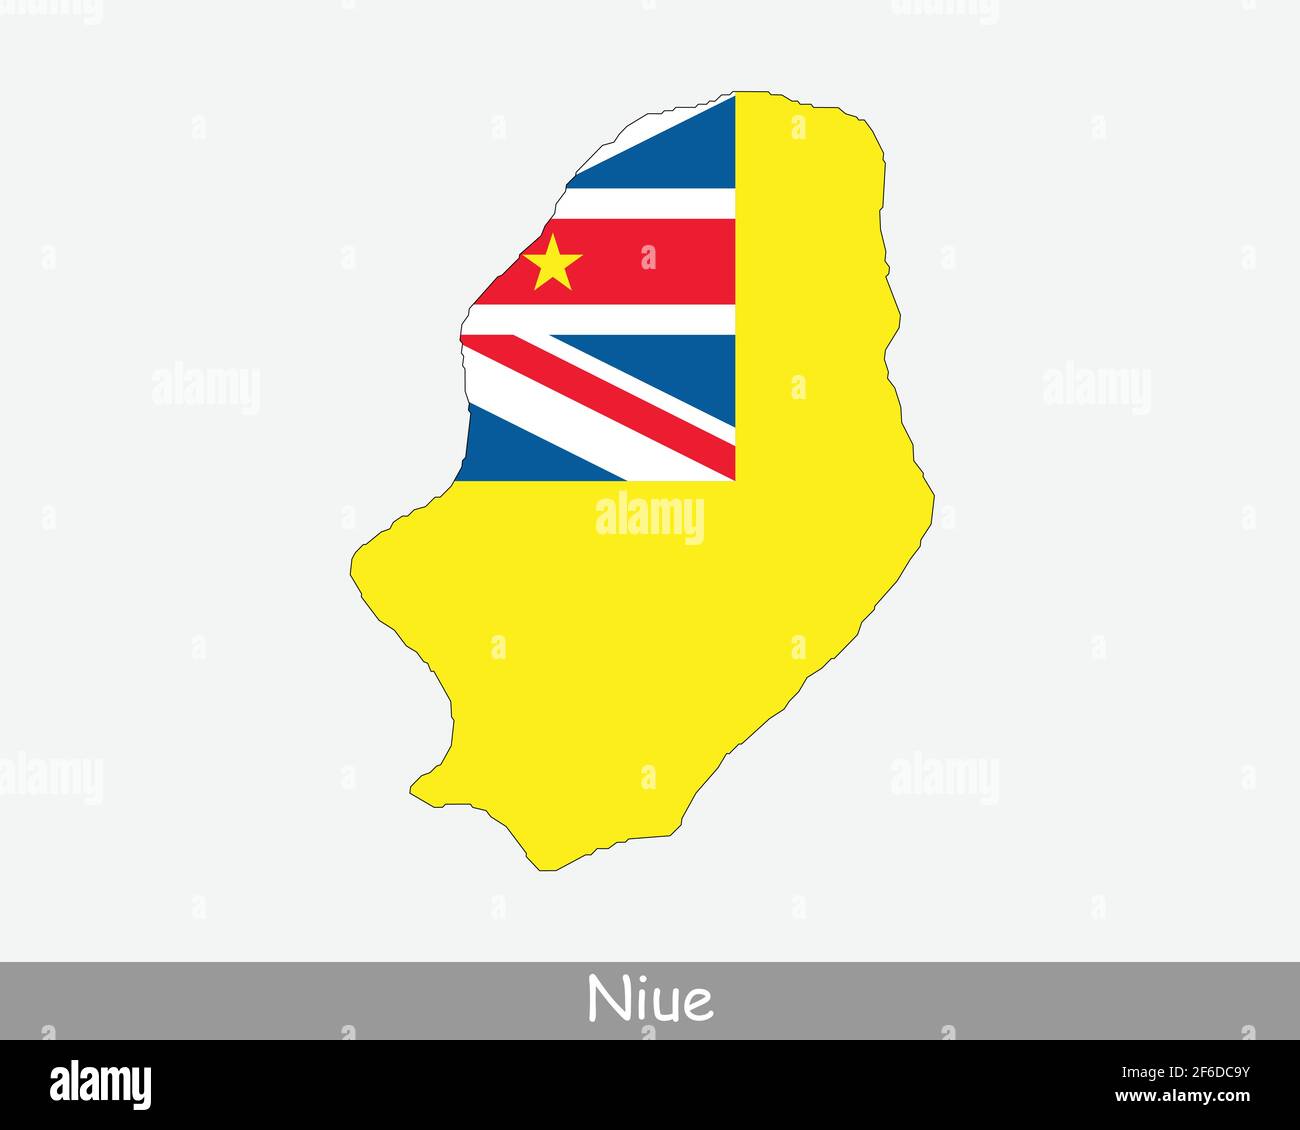 Karte Mit Niue-Flag. Karte von Niue mit isolierter Flagge auf weißem Hintergrund. Freie Assoziation. Assoziierter Staat Neuseeland Vektorgrafik. Stock Vektor